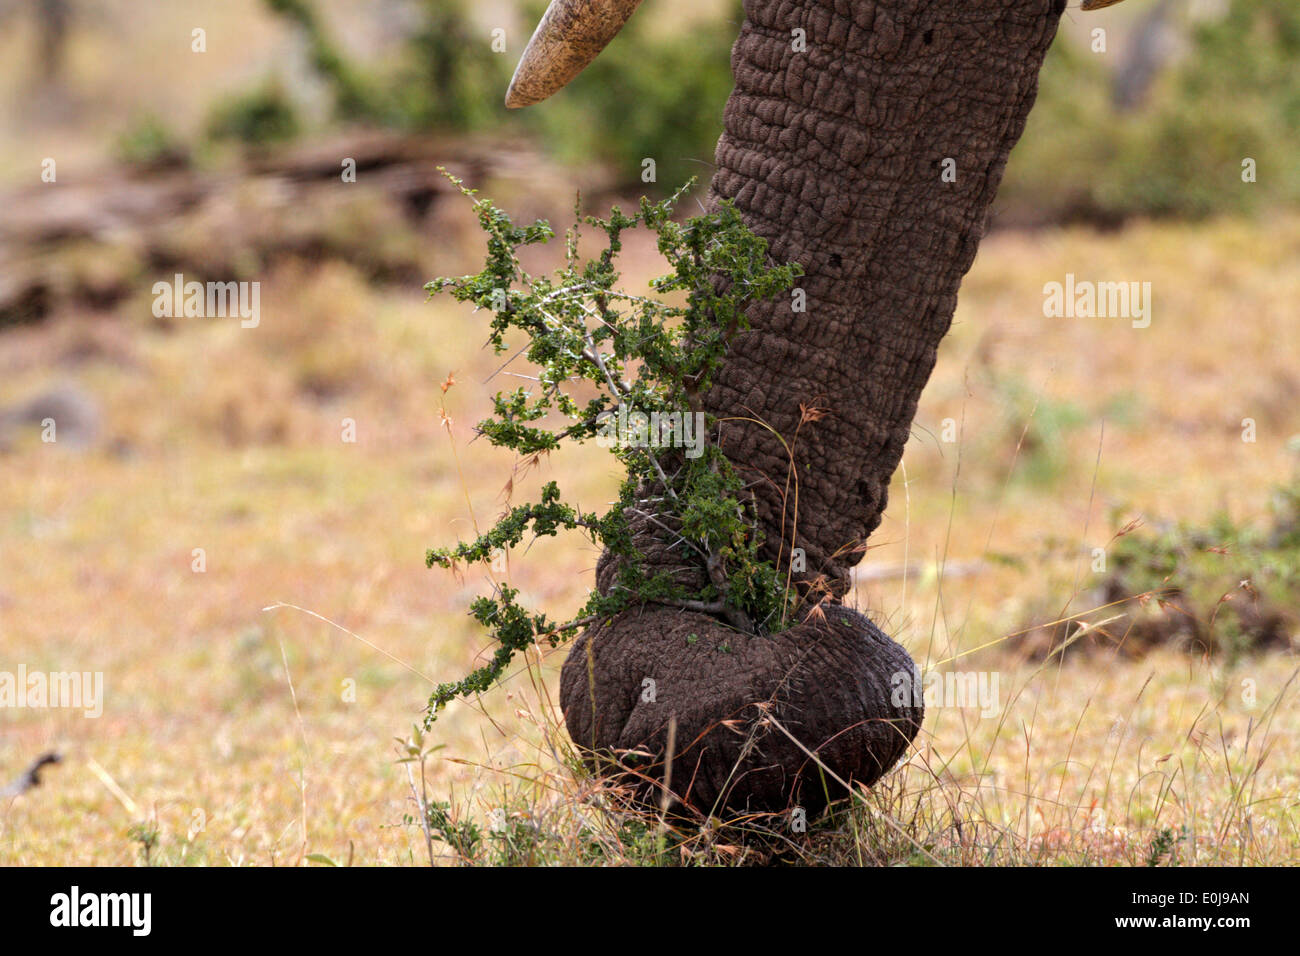 Elephant's trunk pulling up small tree, Mara Naboisho, Kenya (Loxodonta africana) Stock Photo